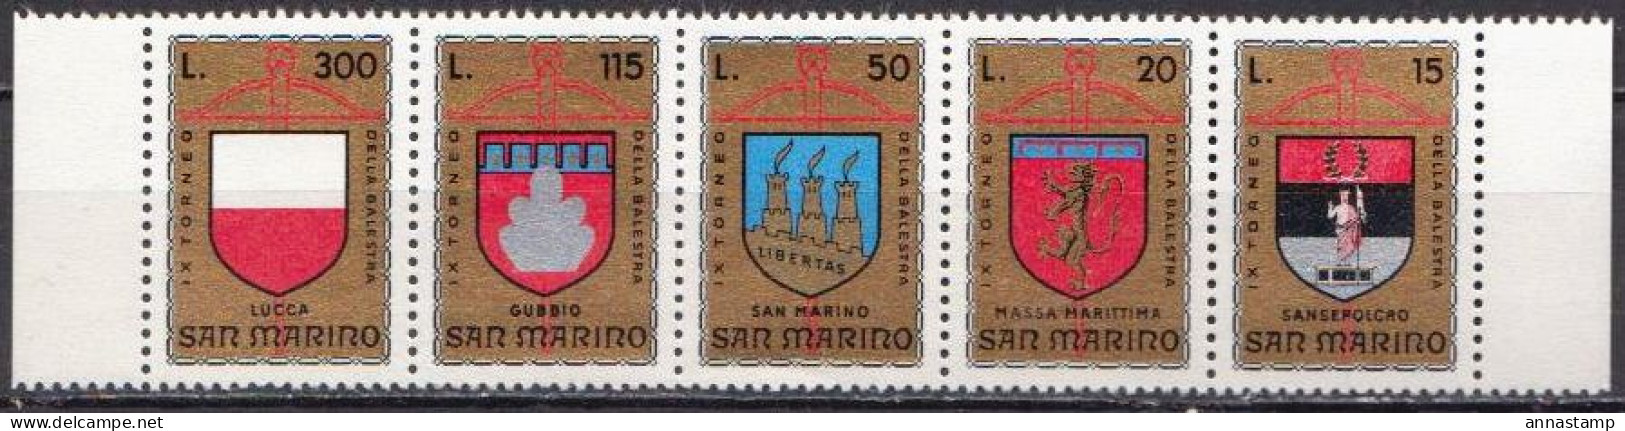 San Marino MNH Set - Sellos